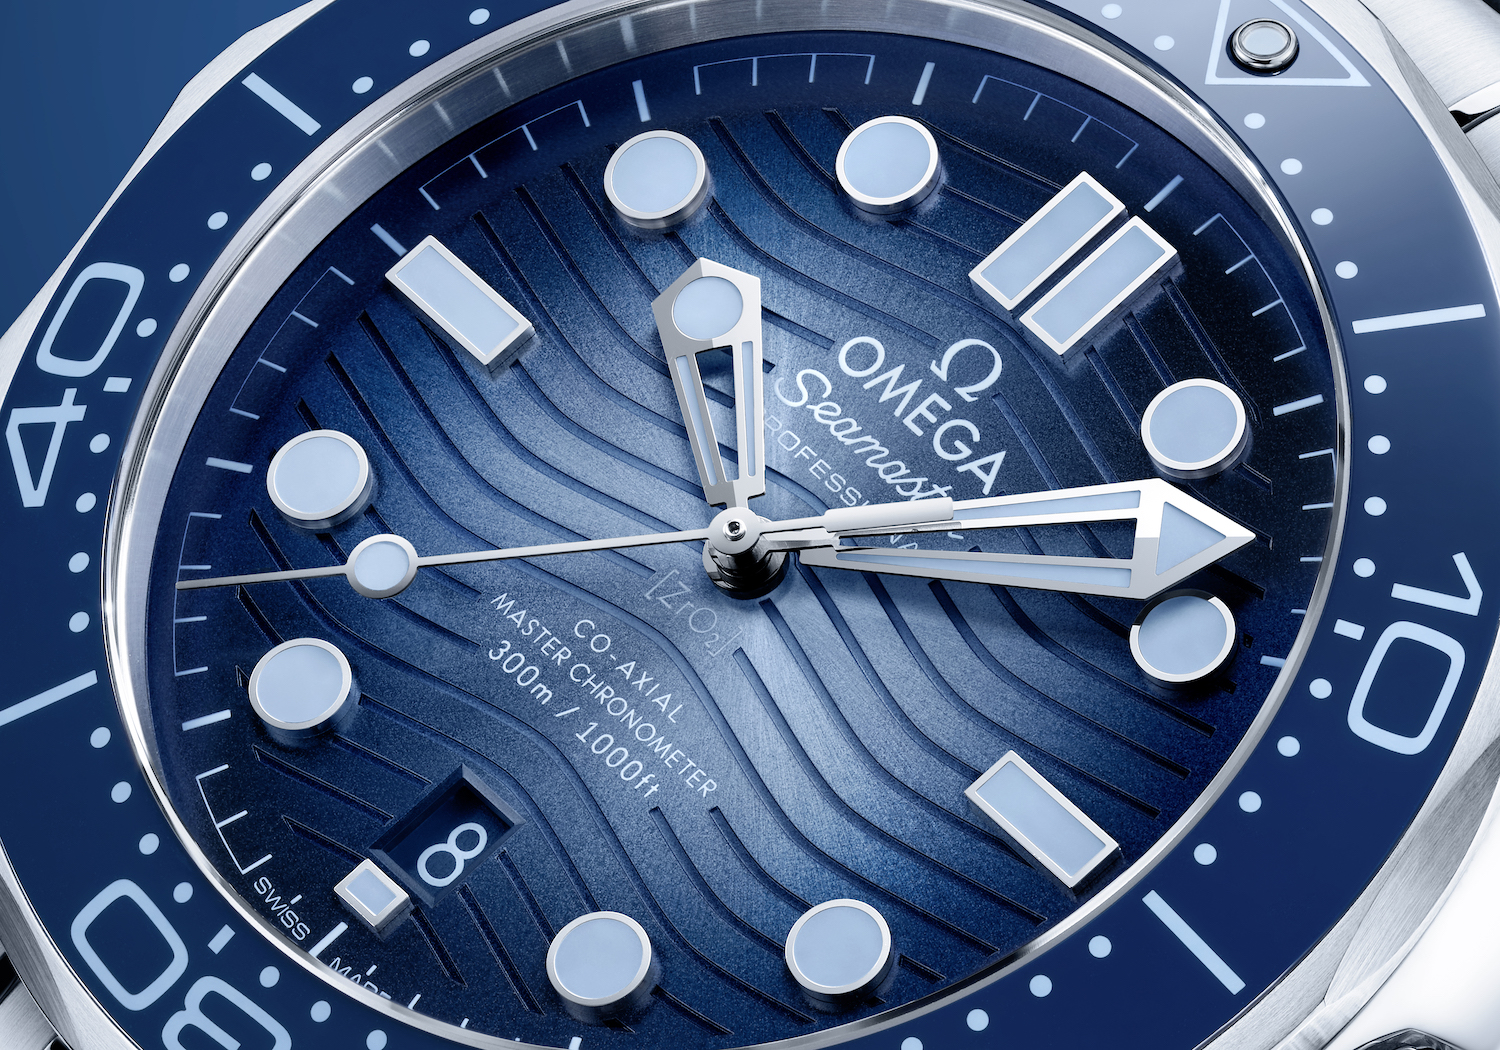 Primer plano de la esfera del reloj con varios tonos de azul y características de diseño que se asemejan a las olas del océano.